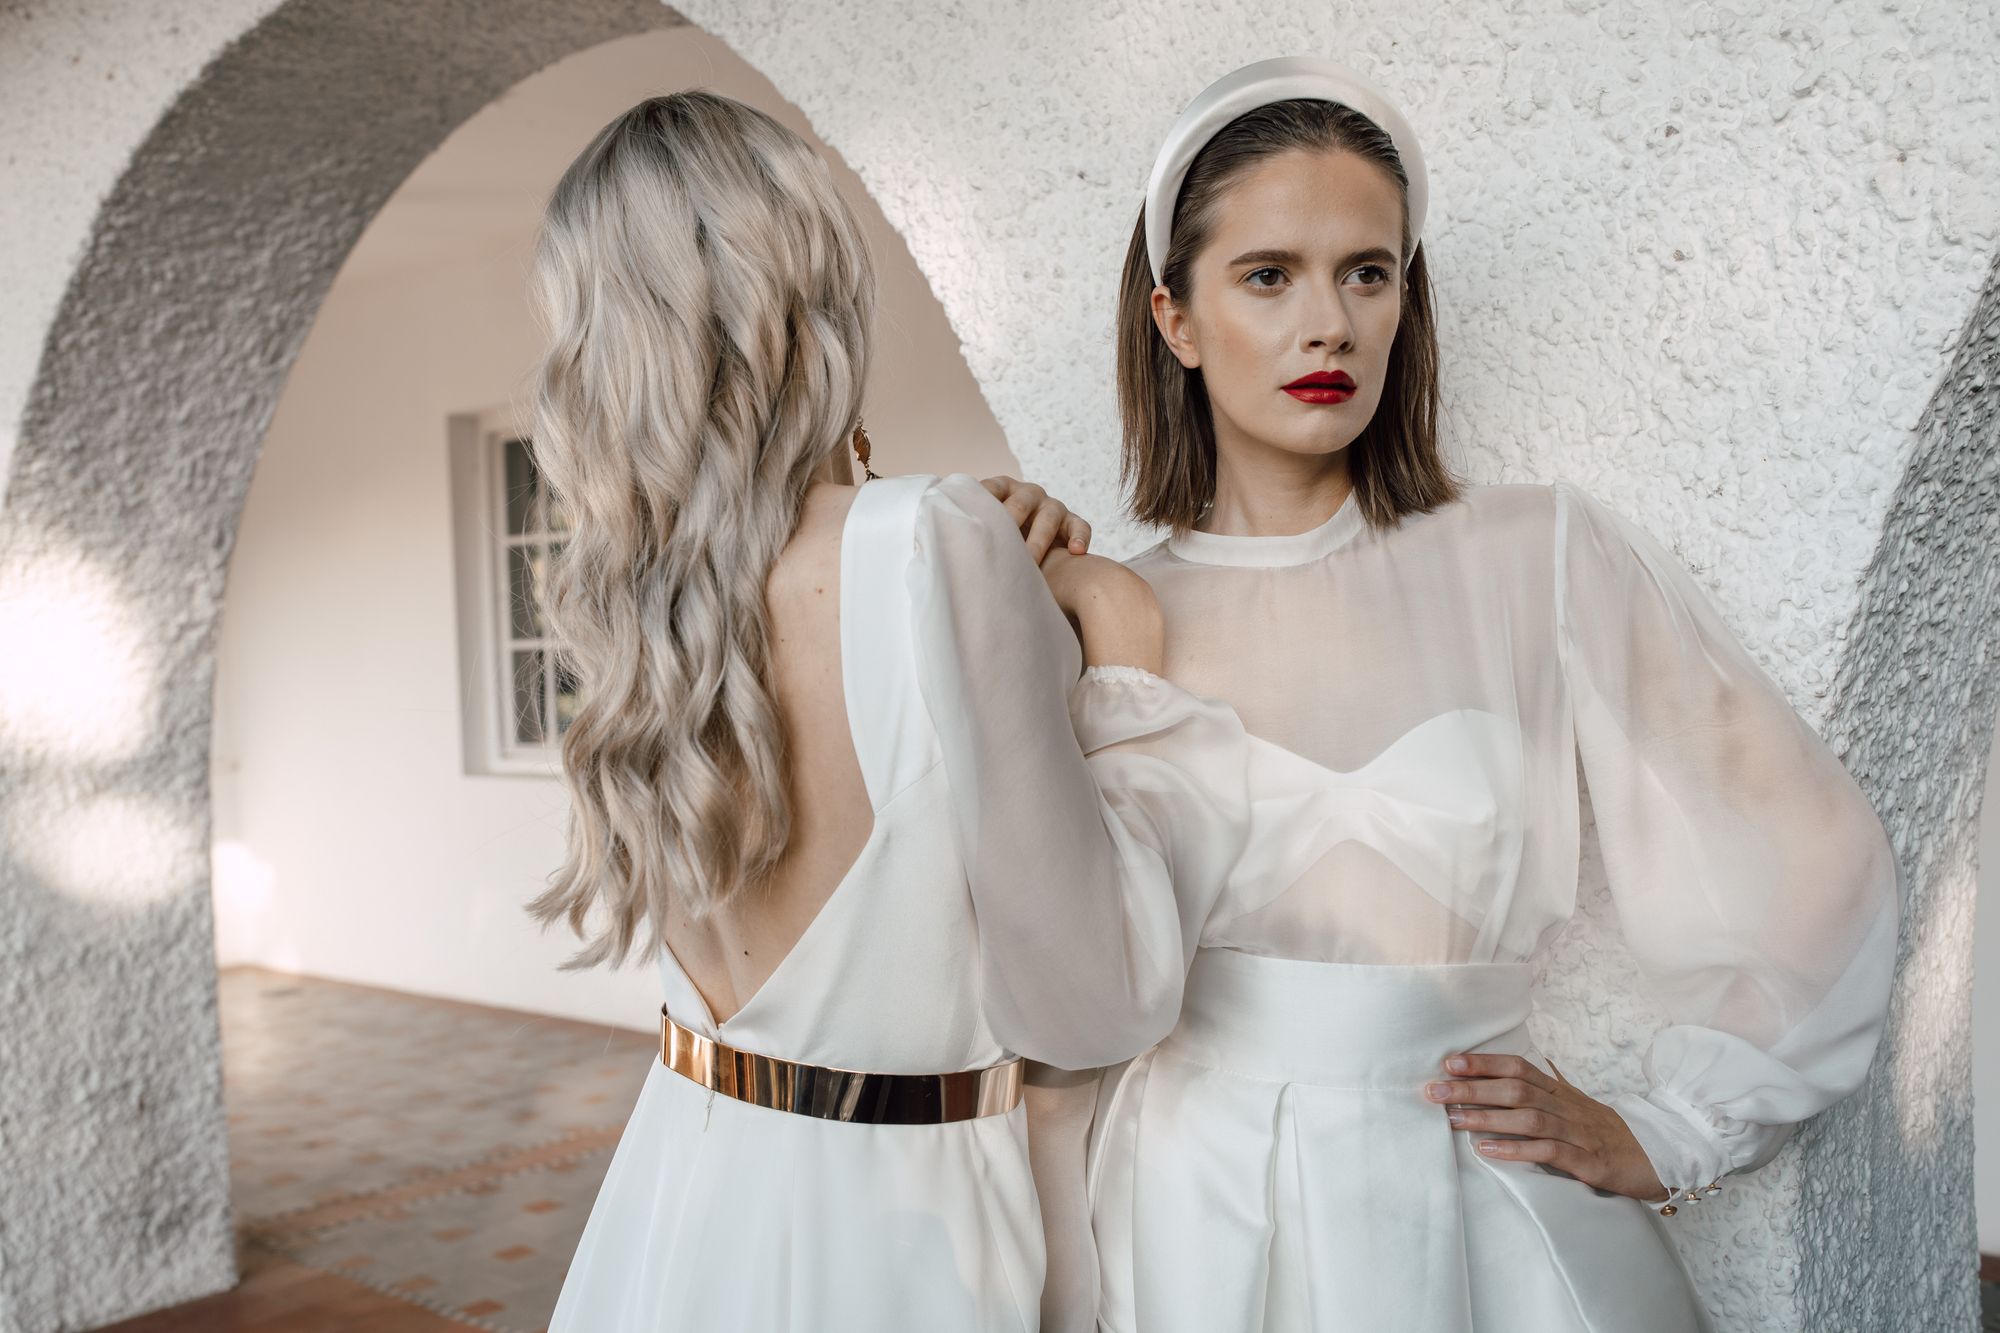 Puristische und elegante Looks für die moderne Braut:
Bridal Fashion von Mara DeBlanc